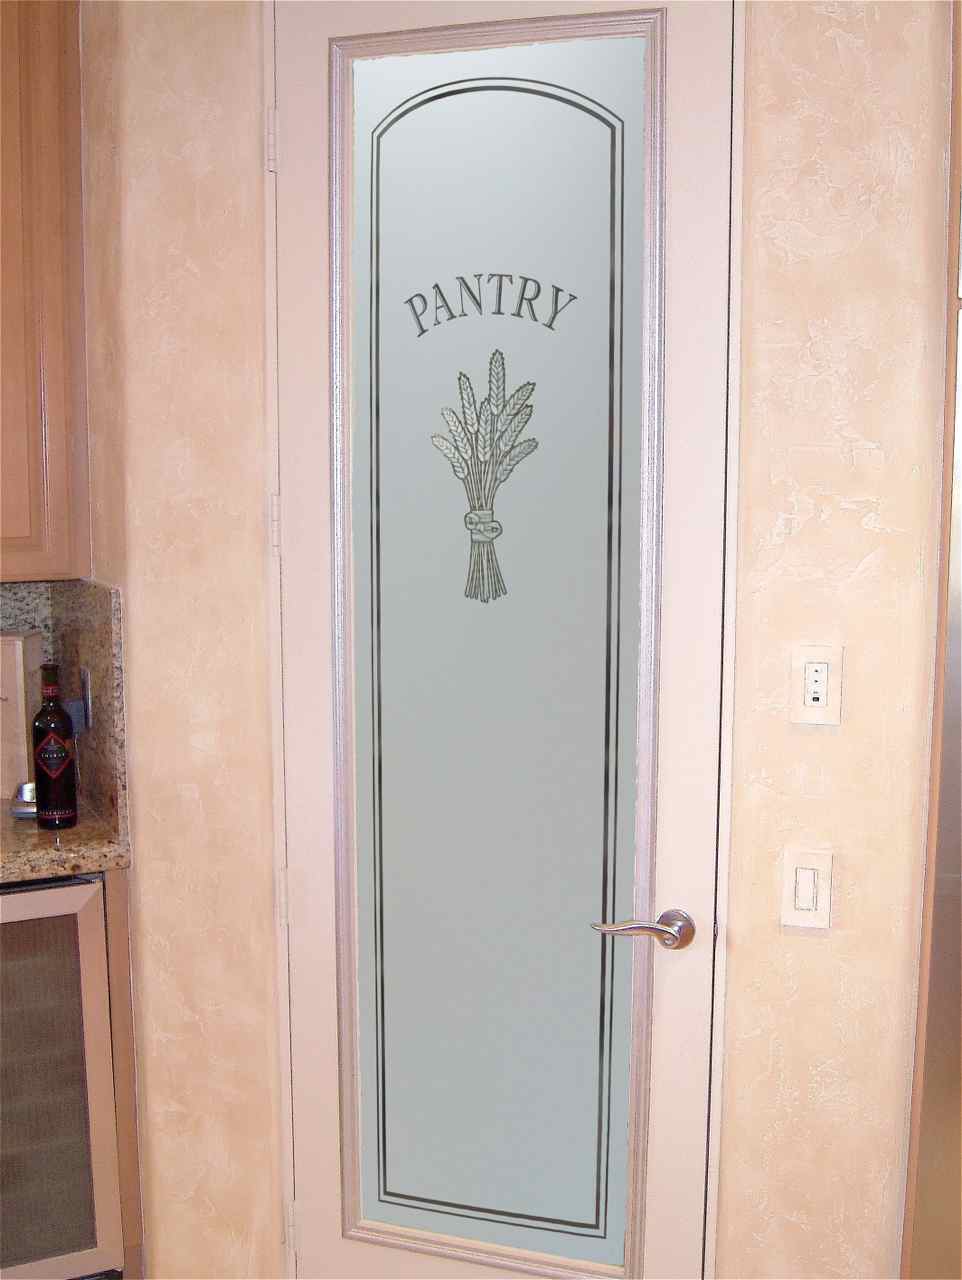 pantry door - Sans Soucie Art Glass